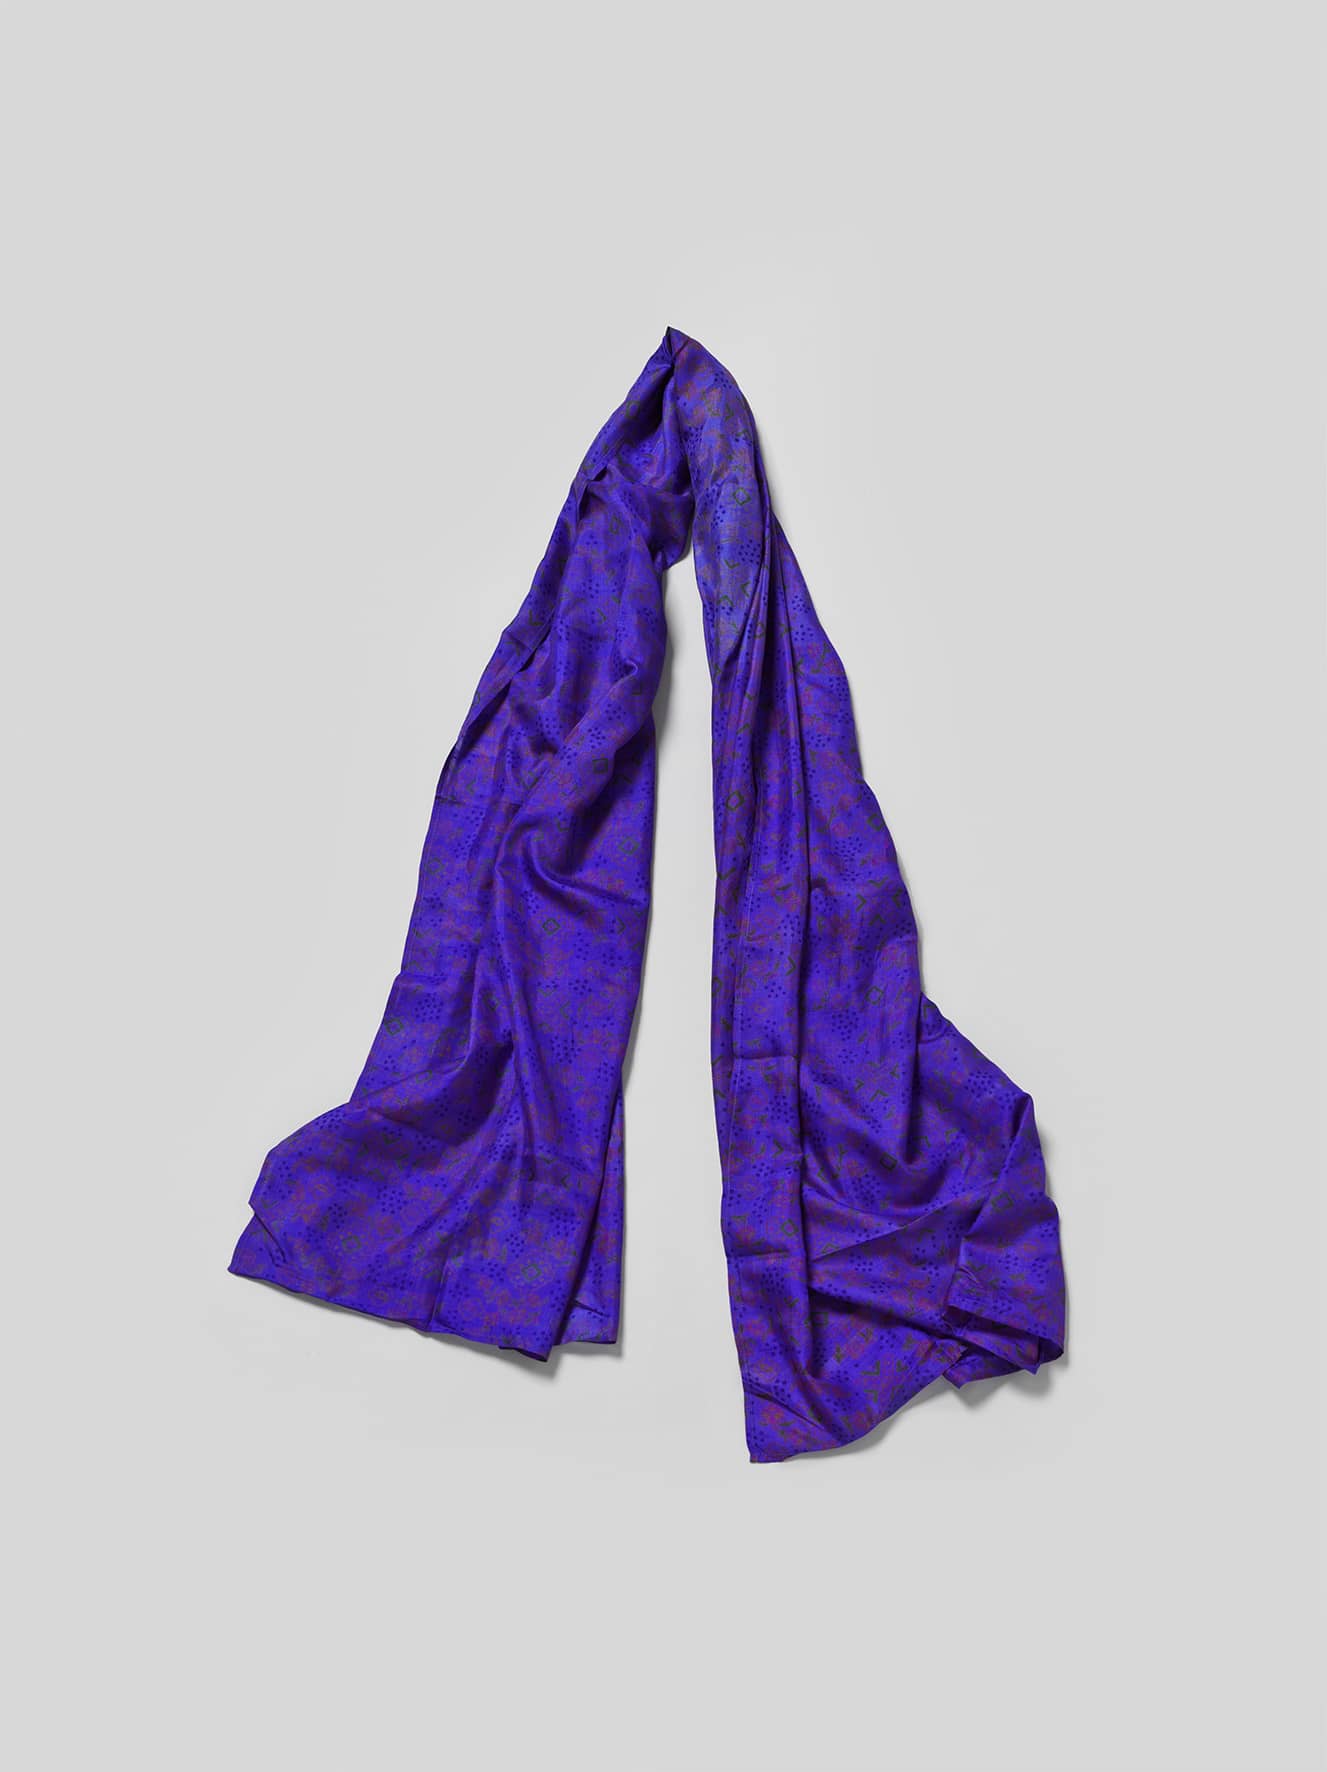 Sari Shawl - Blue/Purple tones